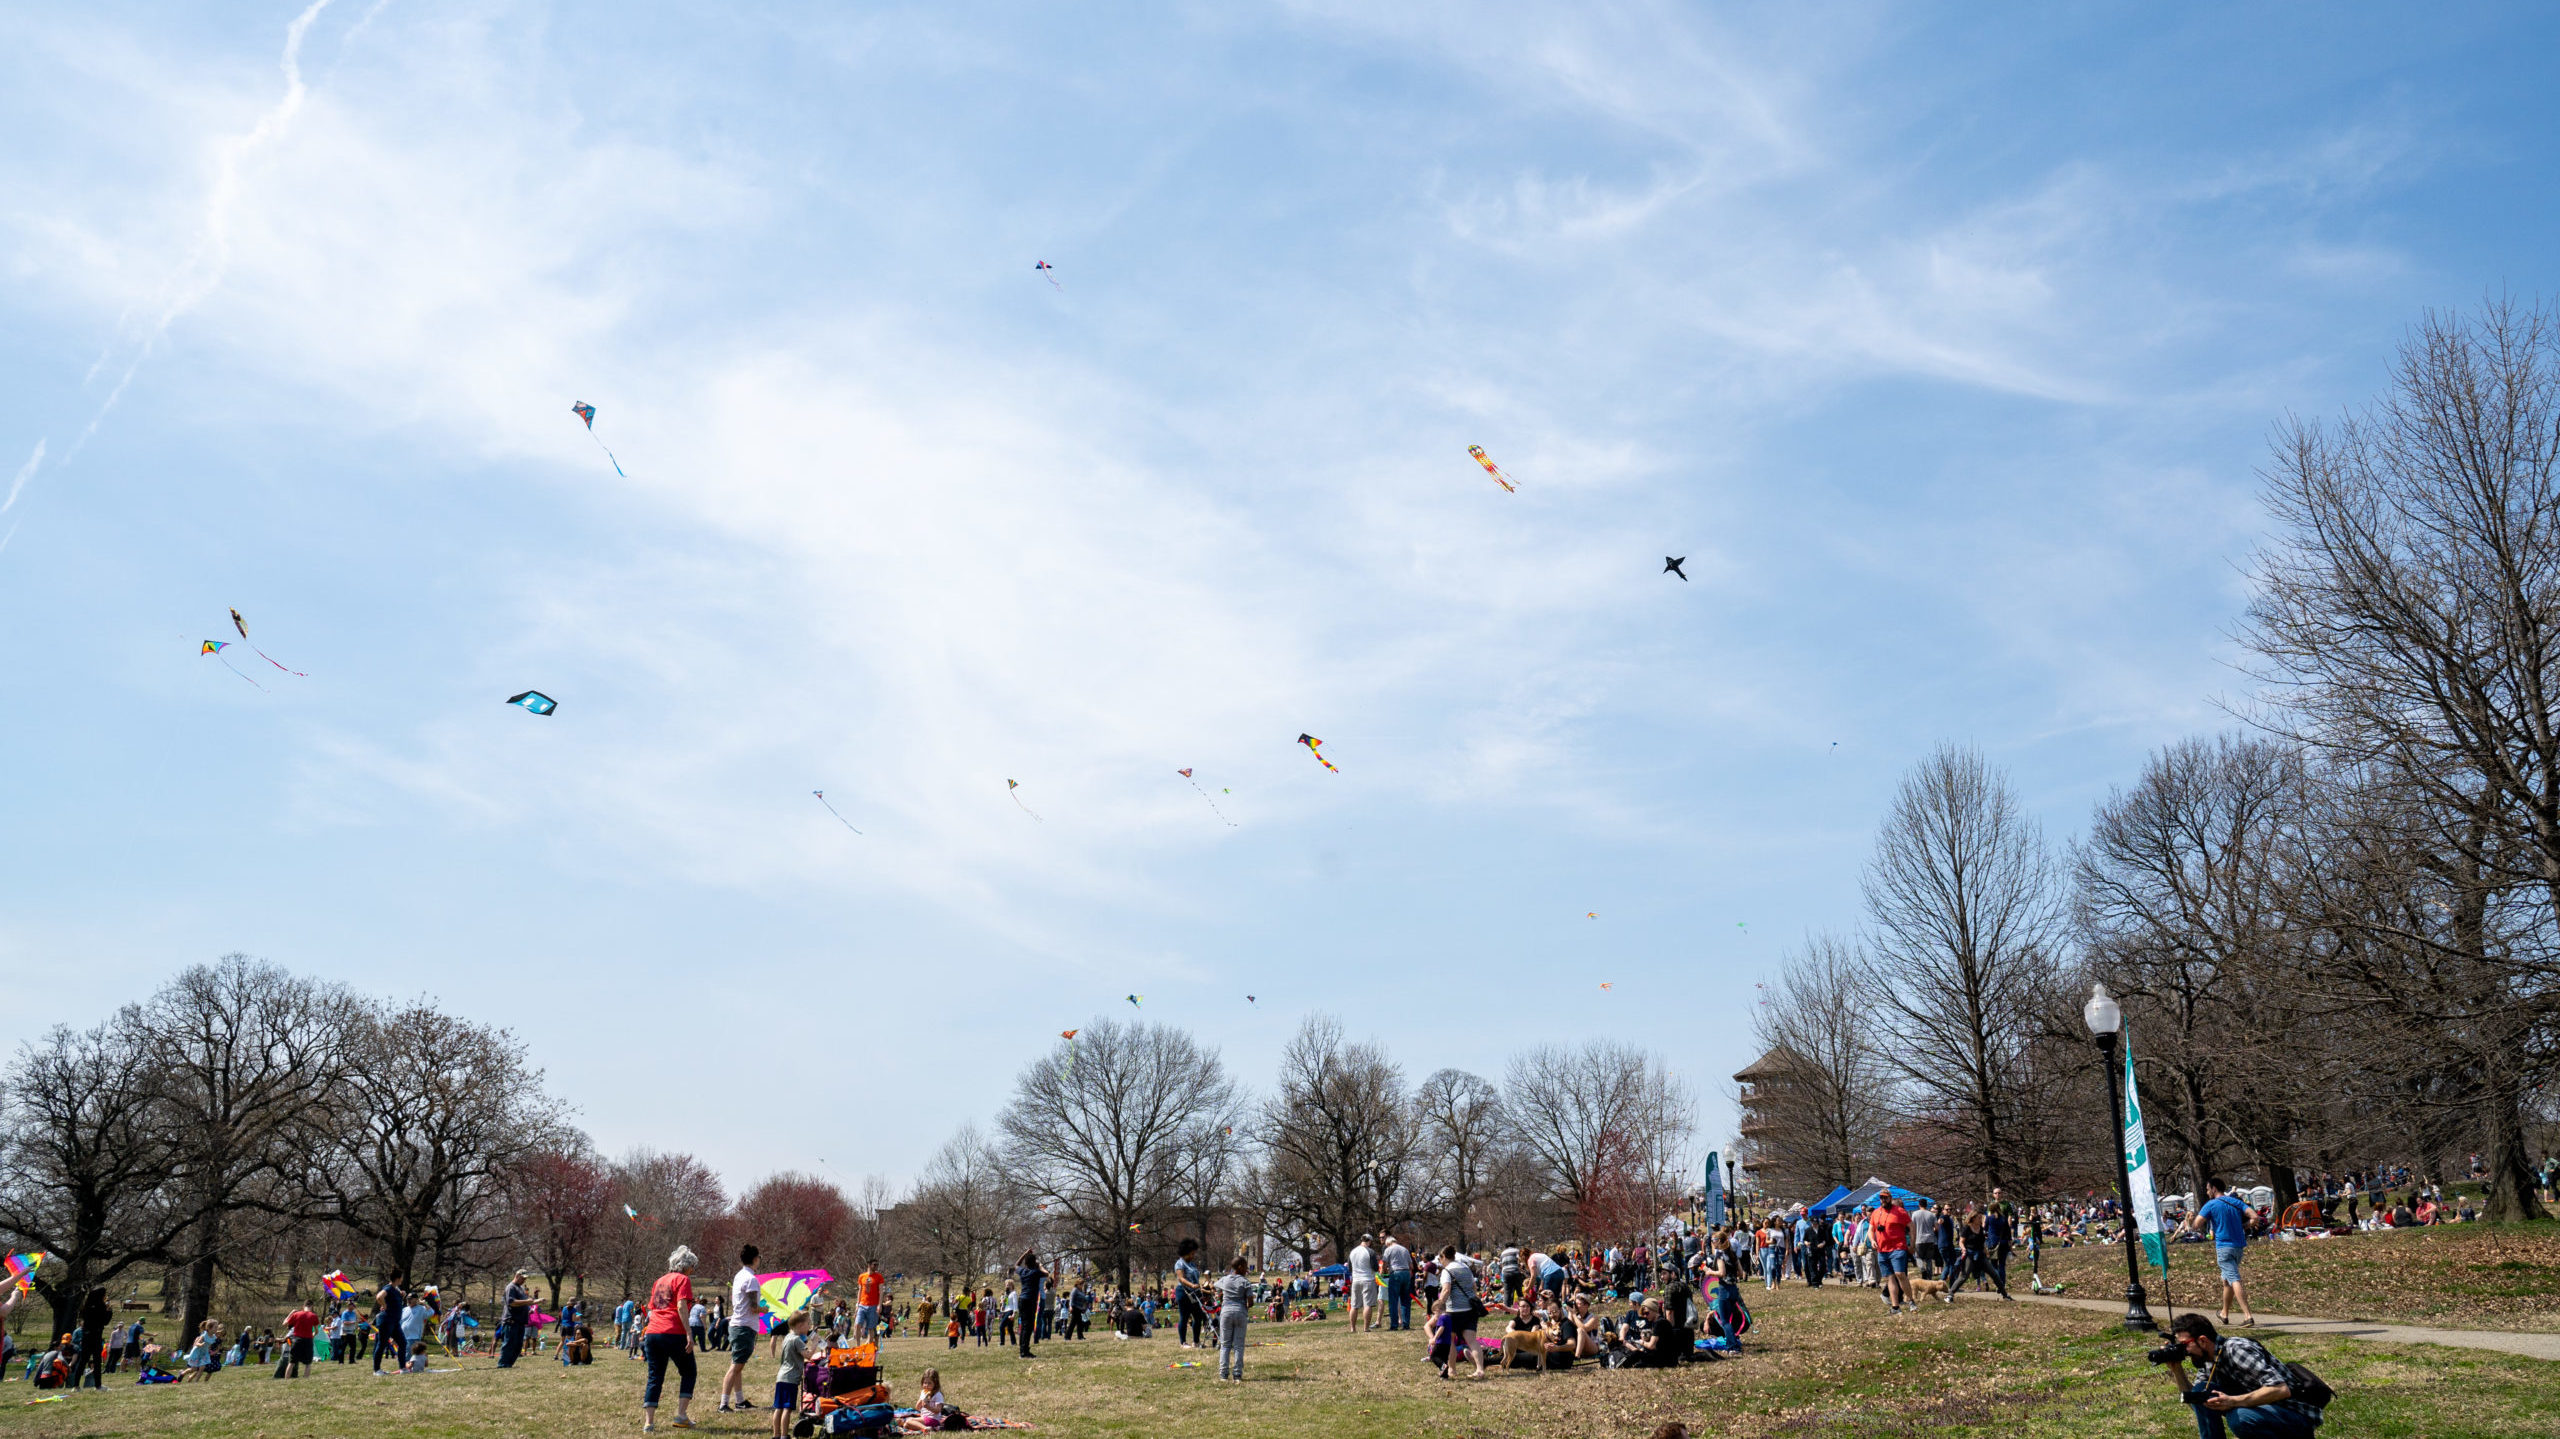 Creative Alliance | The Big Baltimore Kite Festival